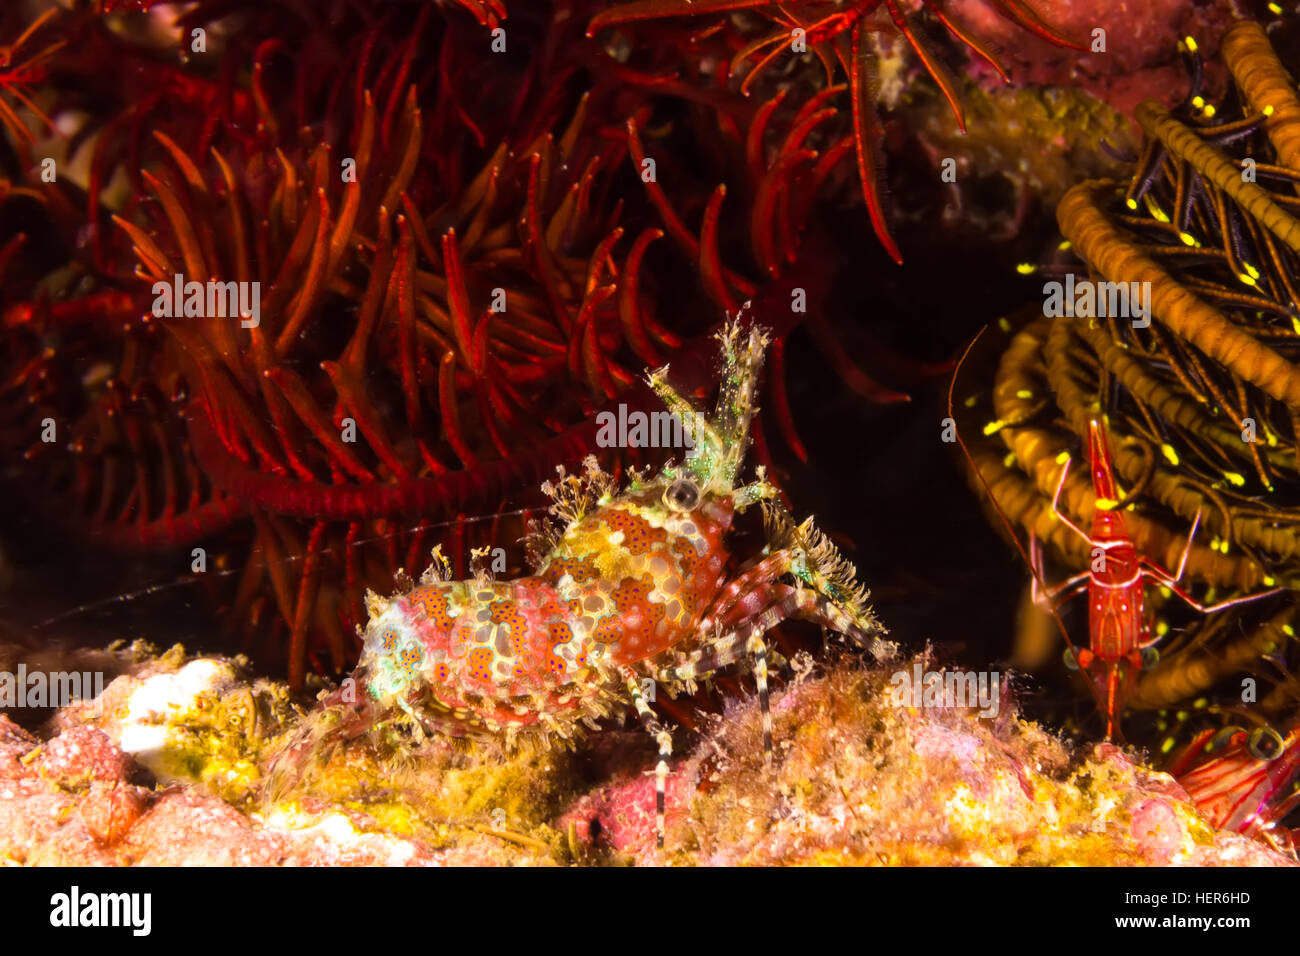 Underwater picture of Marbled Shrimp (Saron marmoratus) Stock Photo